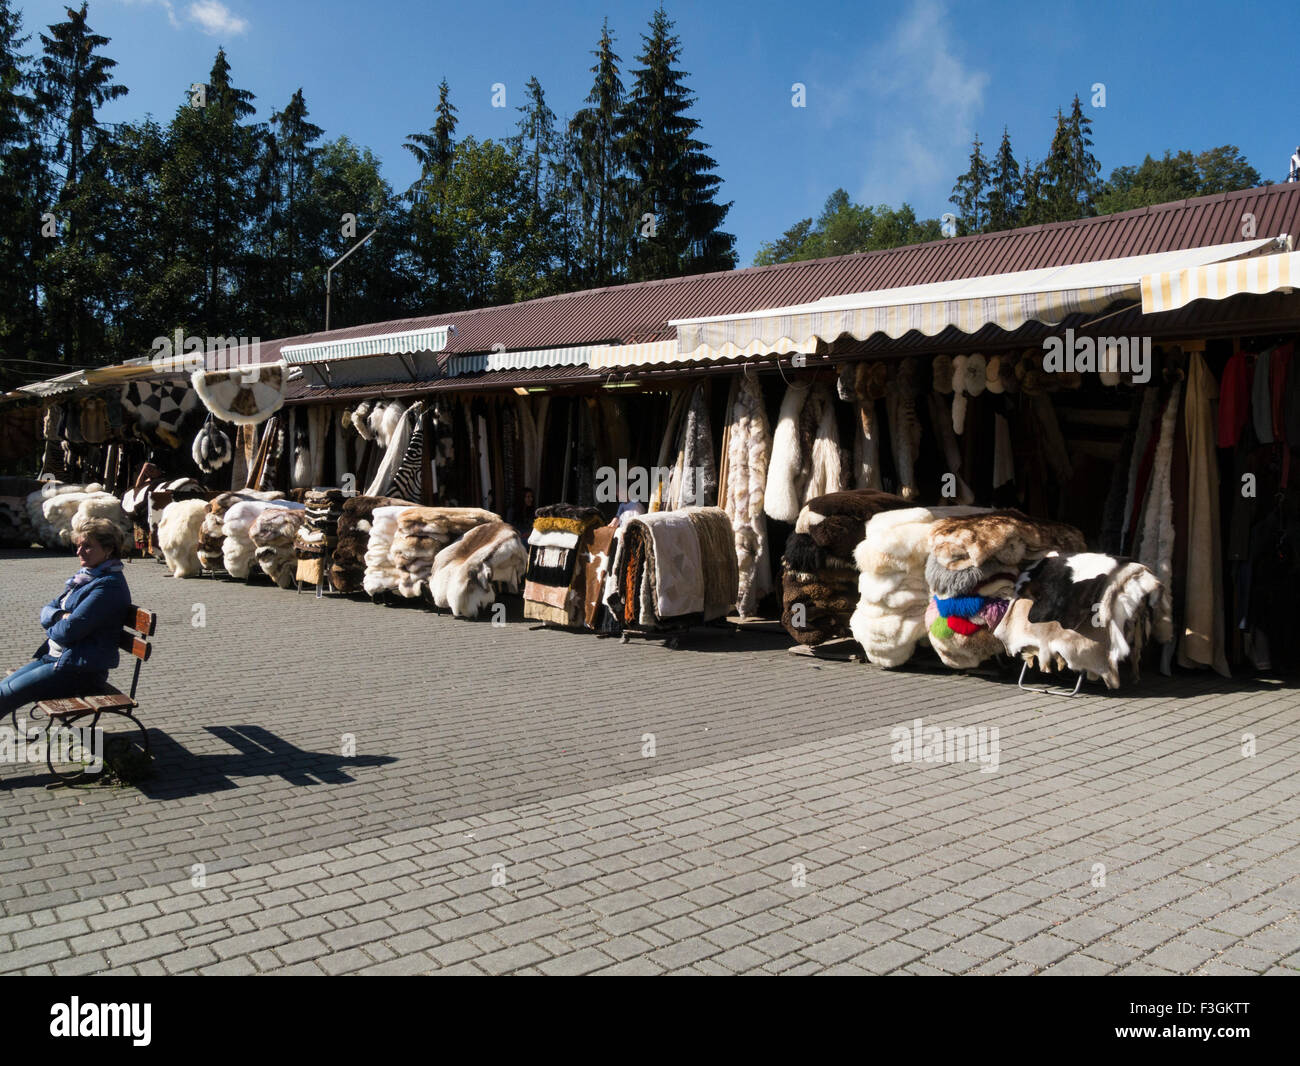 Puestos de venta en el mercado local de alfombras de piel de borrego hizo Calle Krupowki Zakopane Polonia popular centro turístico en el sur de Polonia otoño precioso día de septiembre Foto de stock